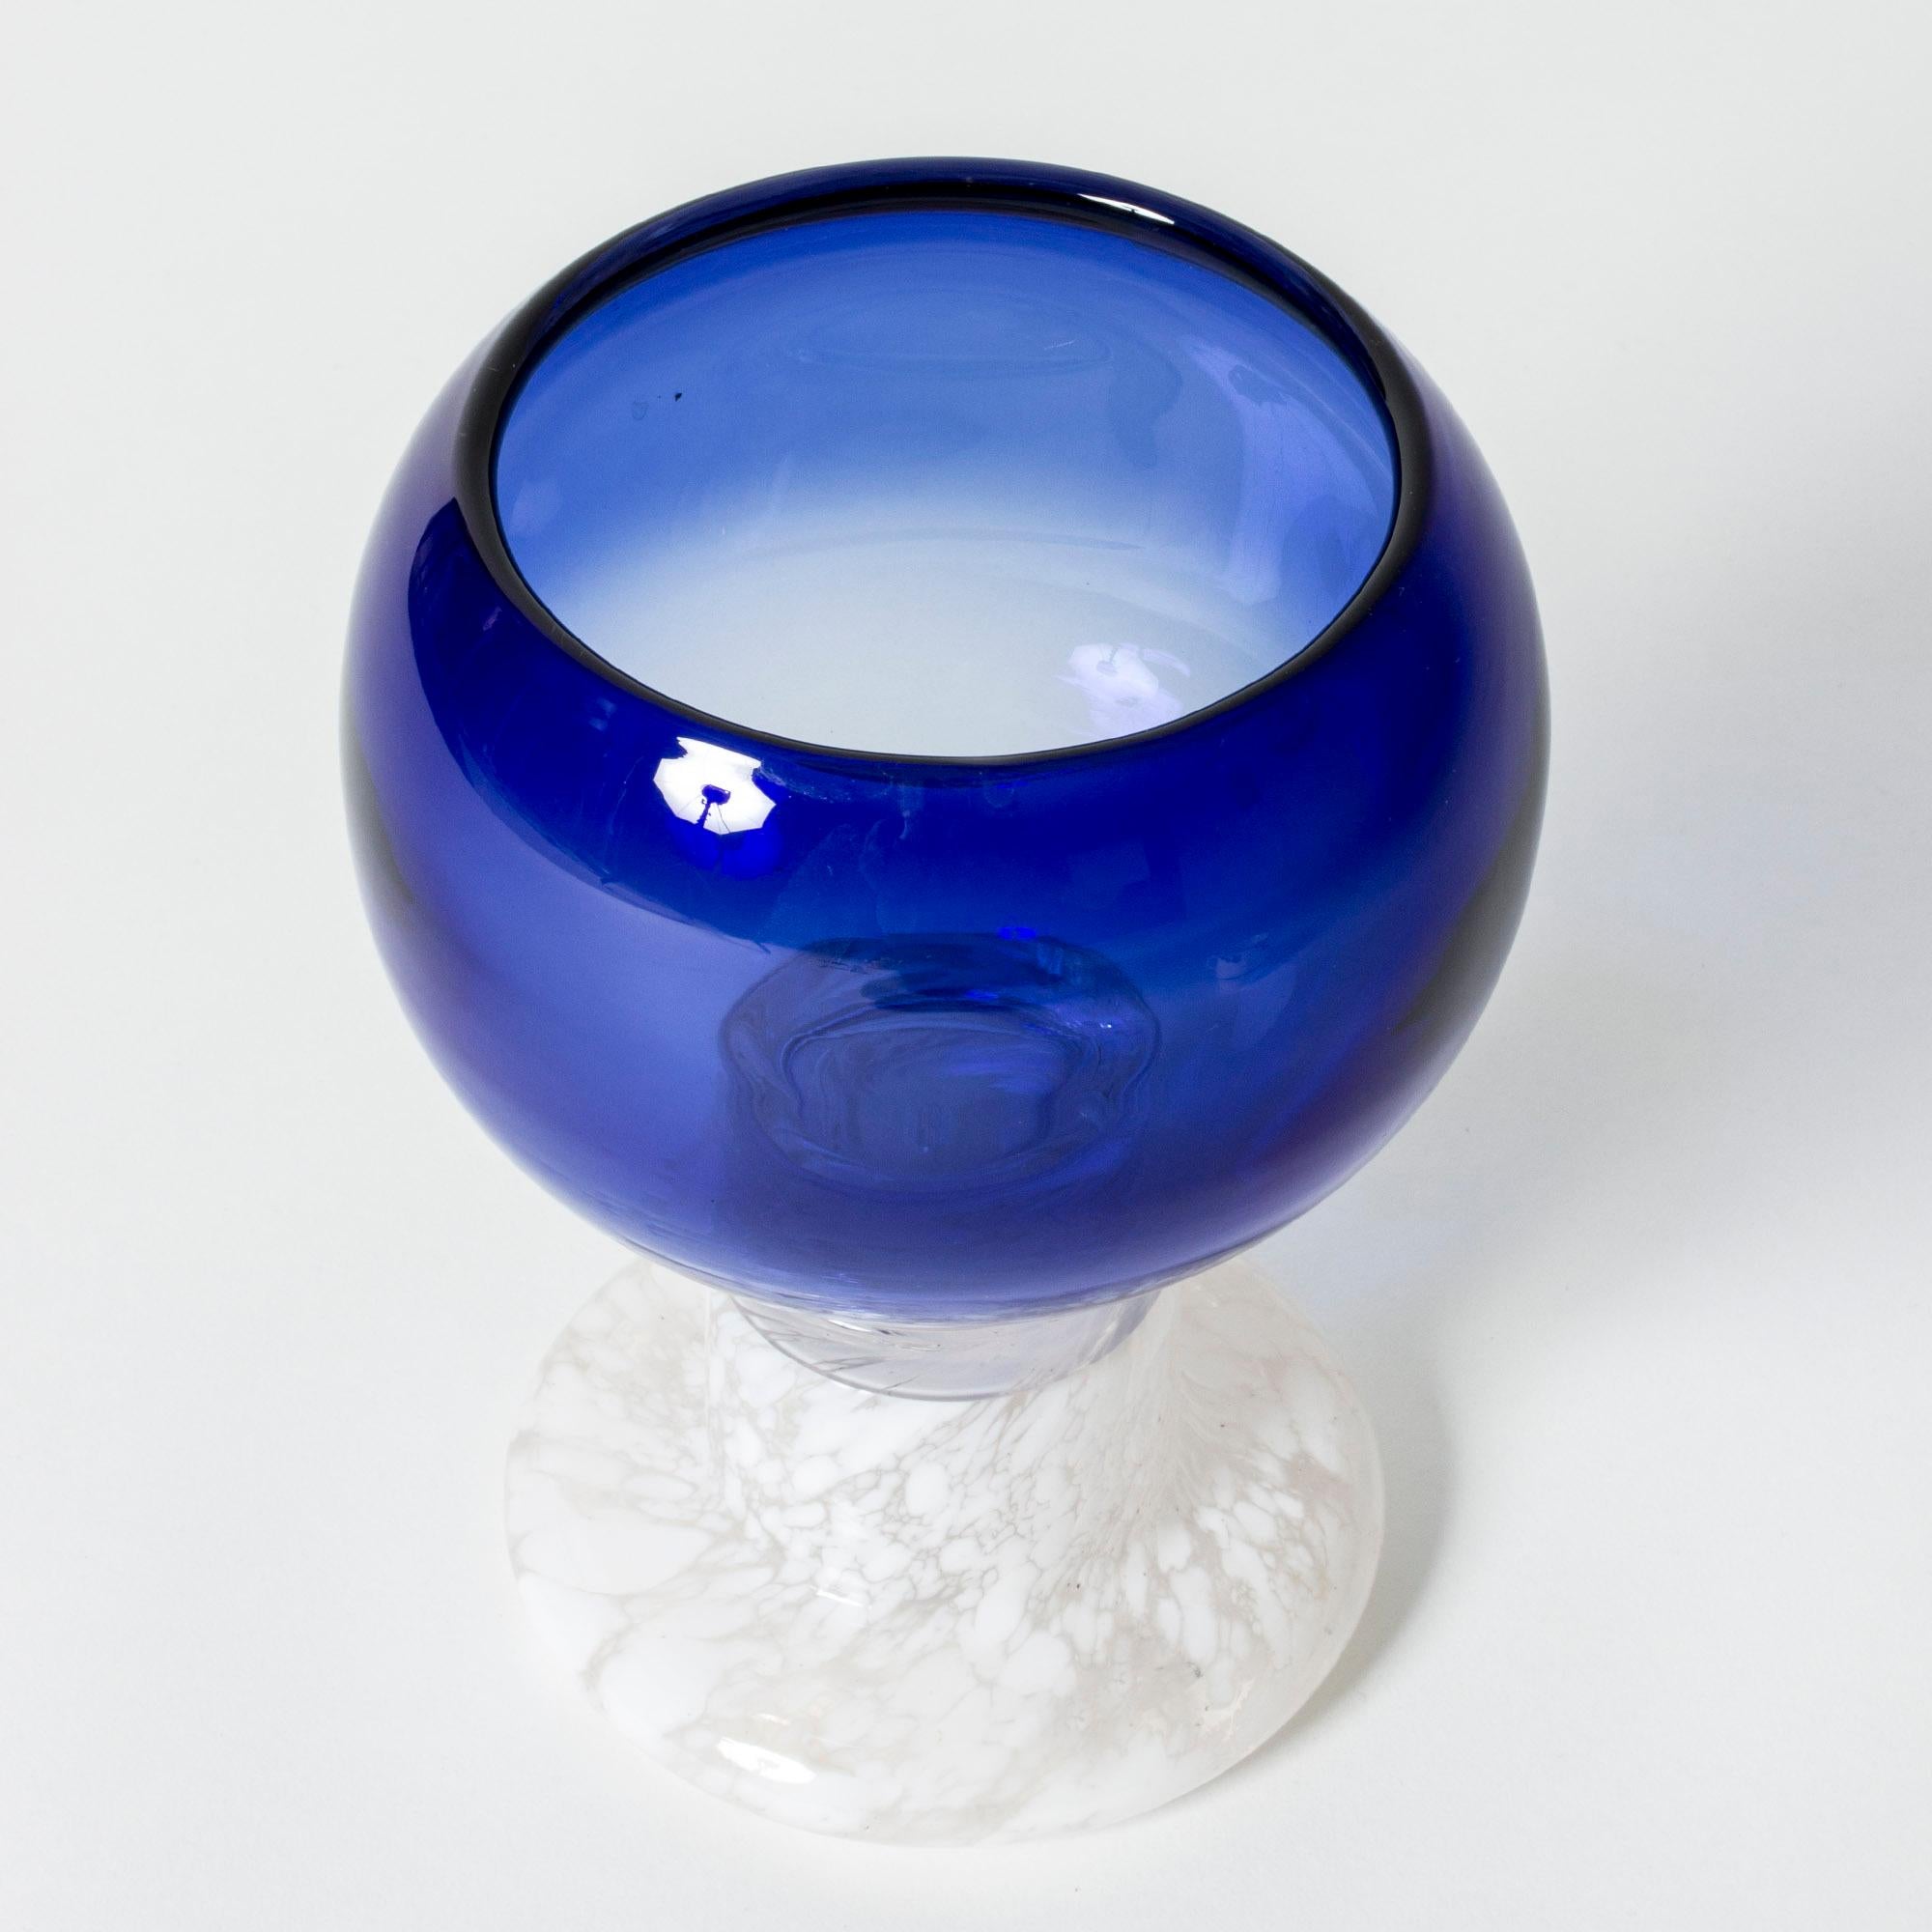 Glass “Pokaali” goblet by Kaj Franck. Vibrant blue glass bowl with a white base.